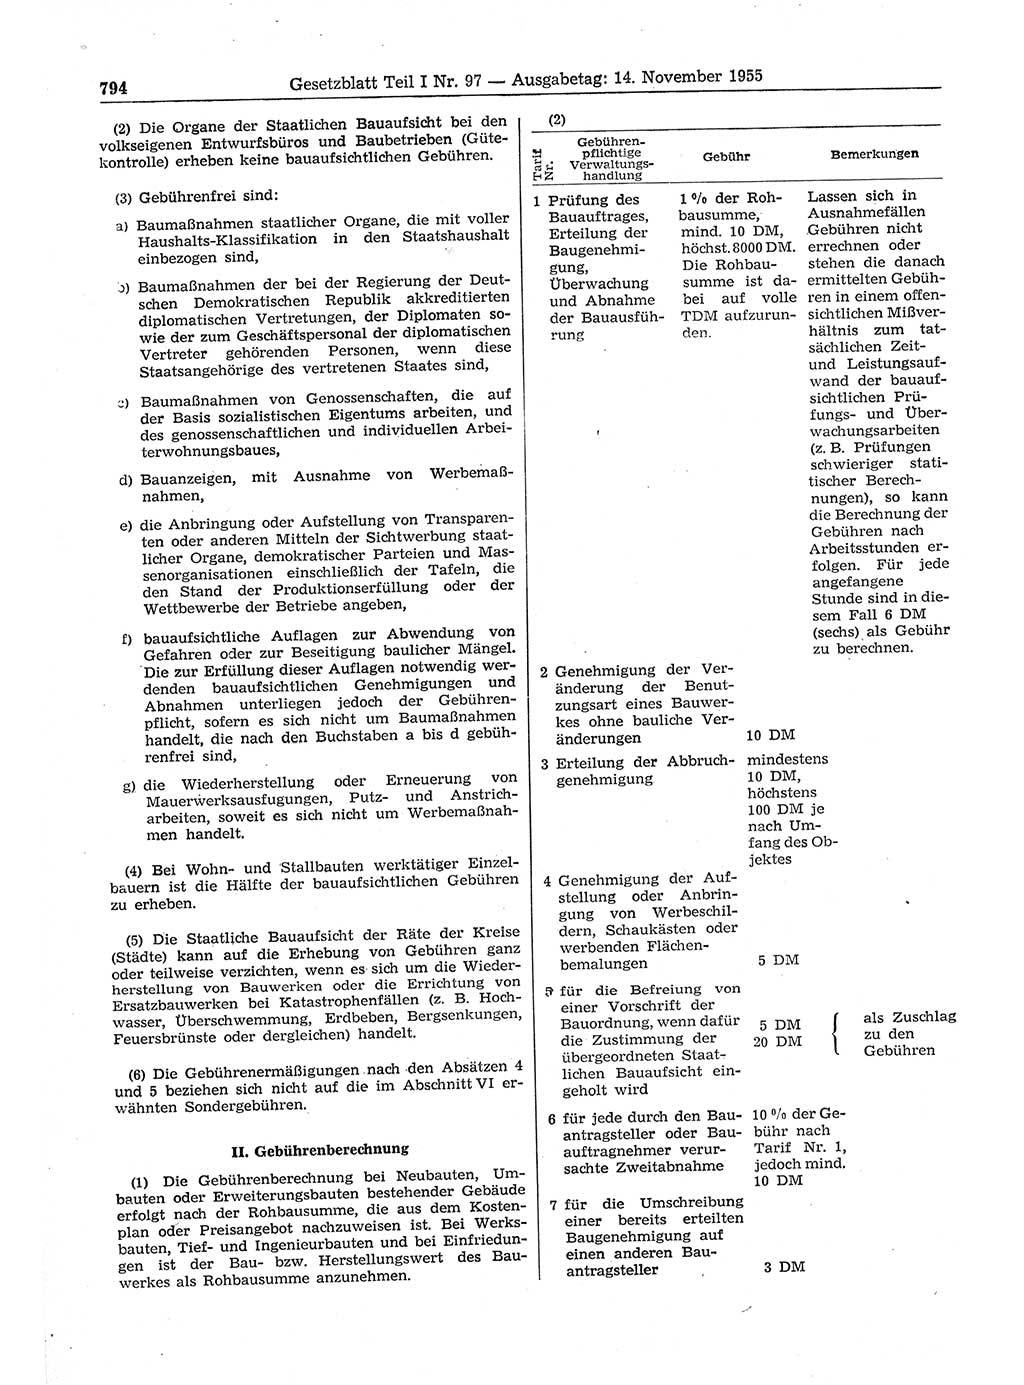 Gesetzblatt (GBl.) der Deutschen Demokratischen Republik (DDR) Teil Ⅰ 1955, Seite 794 (GBl. DDR Ⅰ 1955, S. 794)